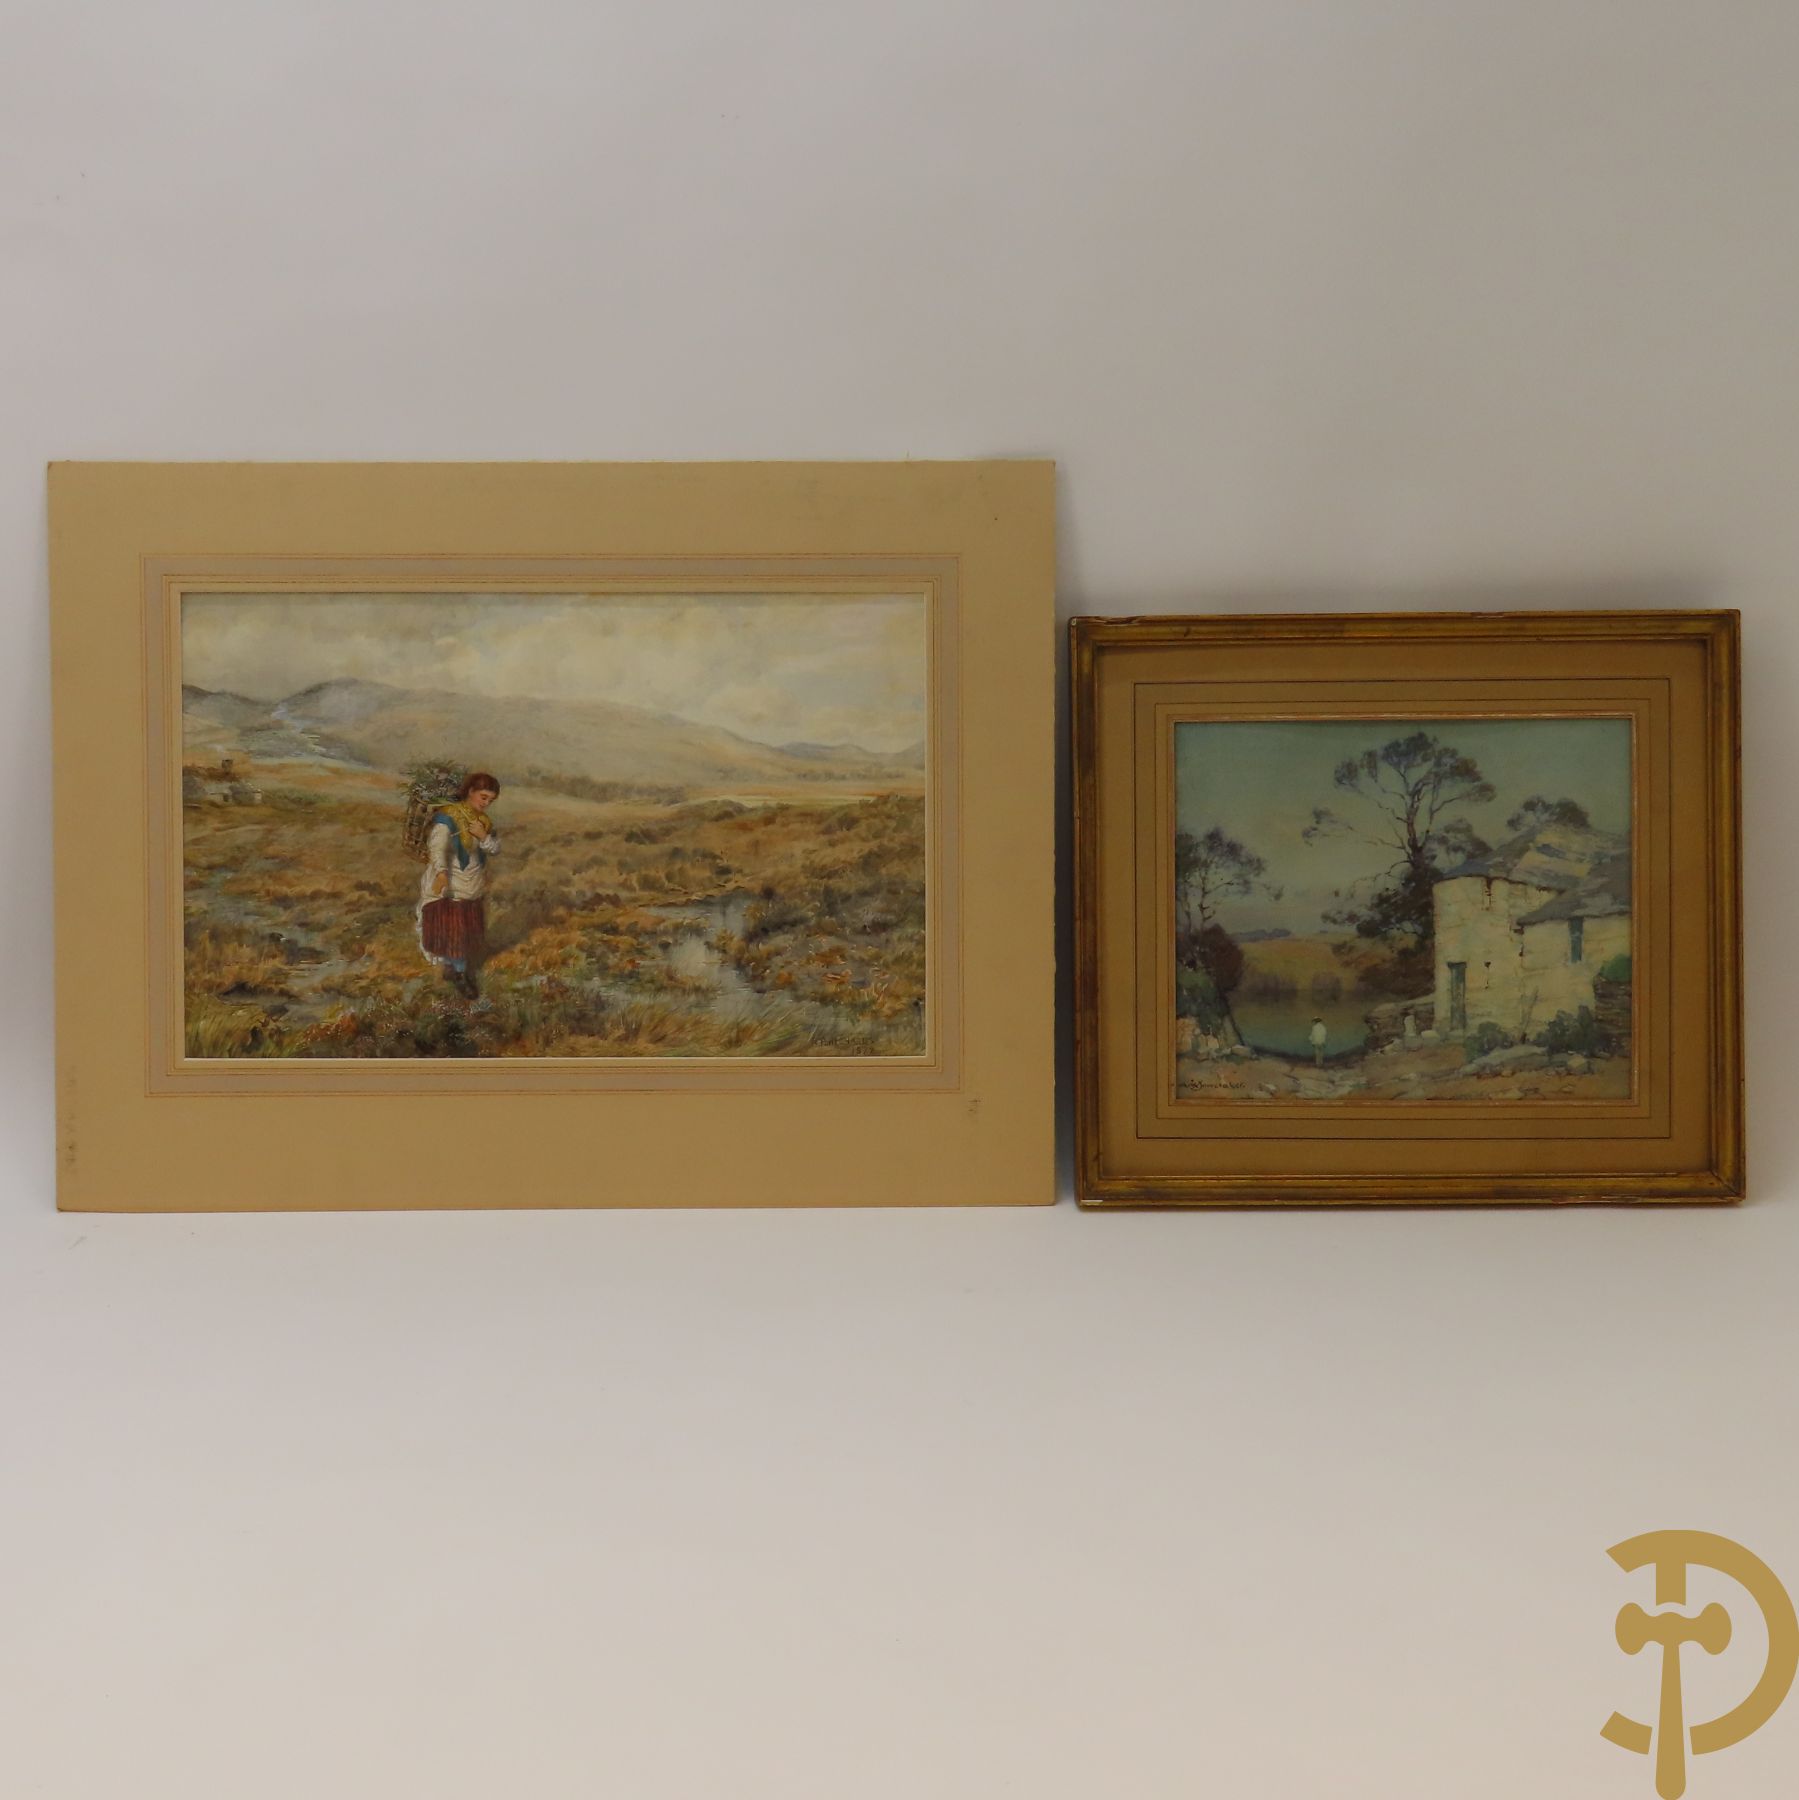 DOWERAKER A.M. get. 'Personage bij meer  en burcht' aquarel + RICHARDS R.P. get. 1872 'Houtsprokkelaarster in heuvelachtig landschap' aquarel